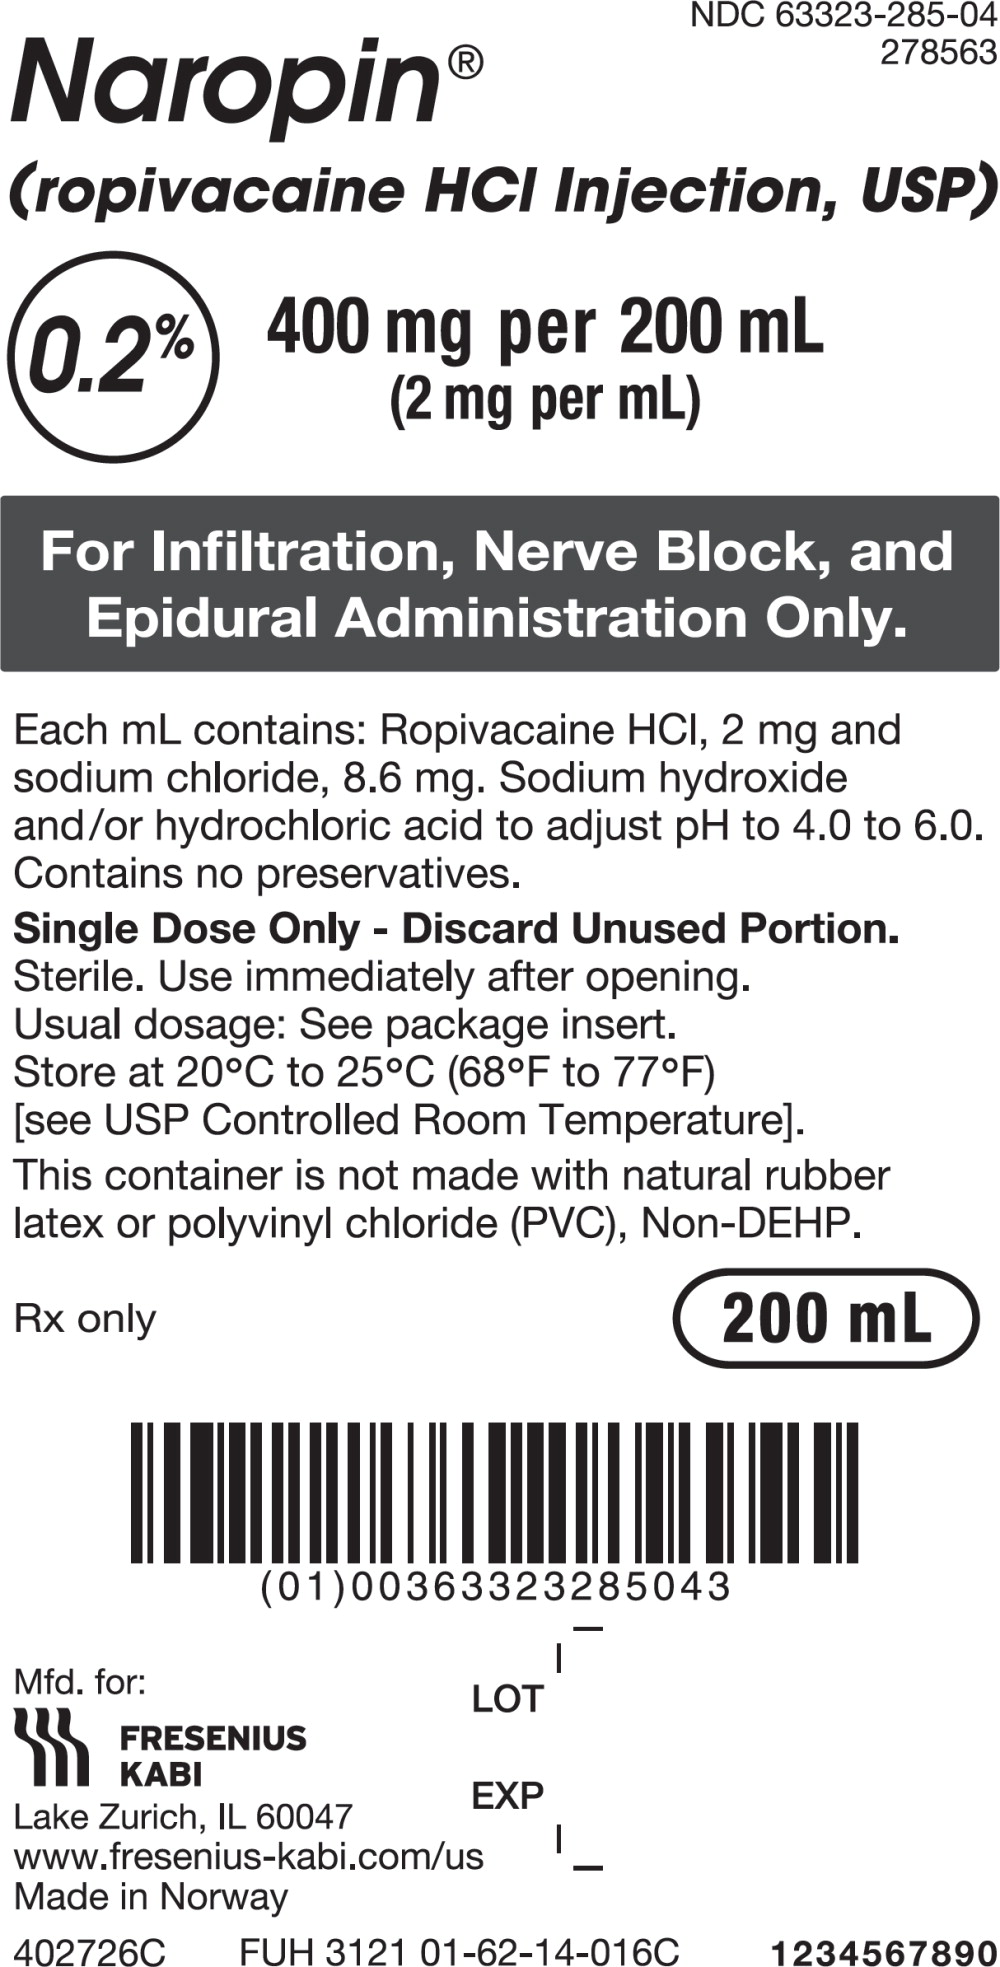 PACKAGE LABEL - PRINCIPAL DISPLAY PANEL - Naropin 200 mL Bag Label
